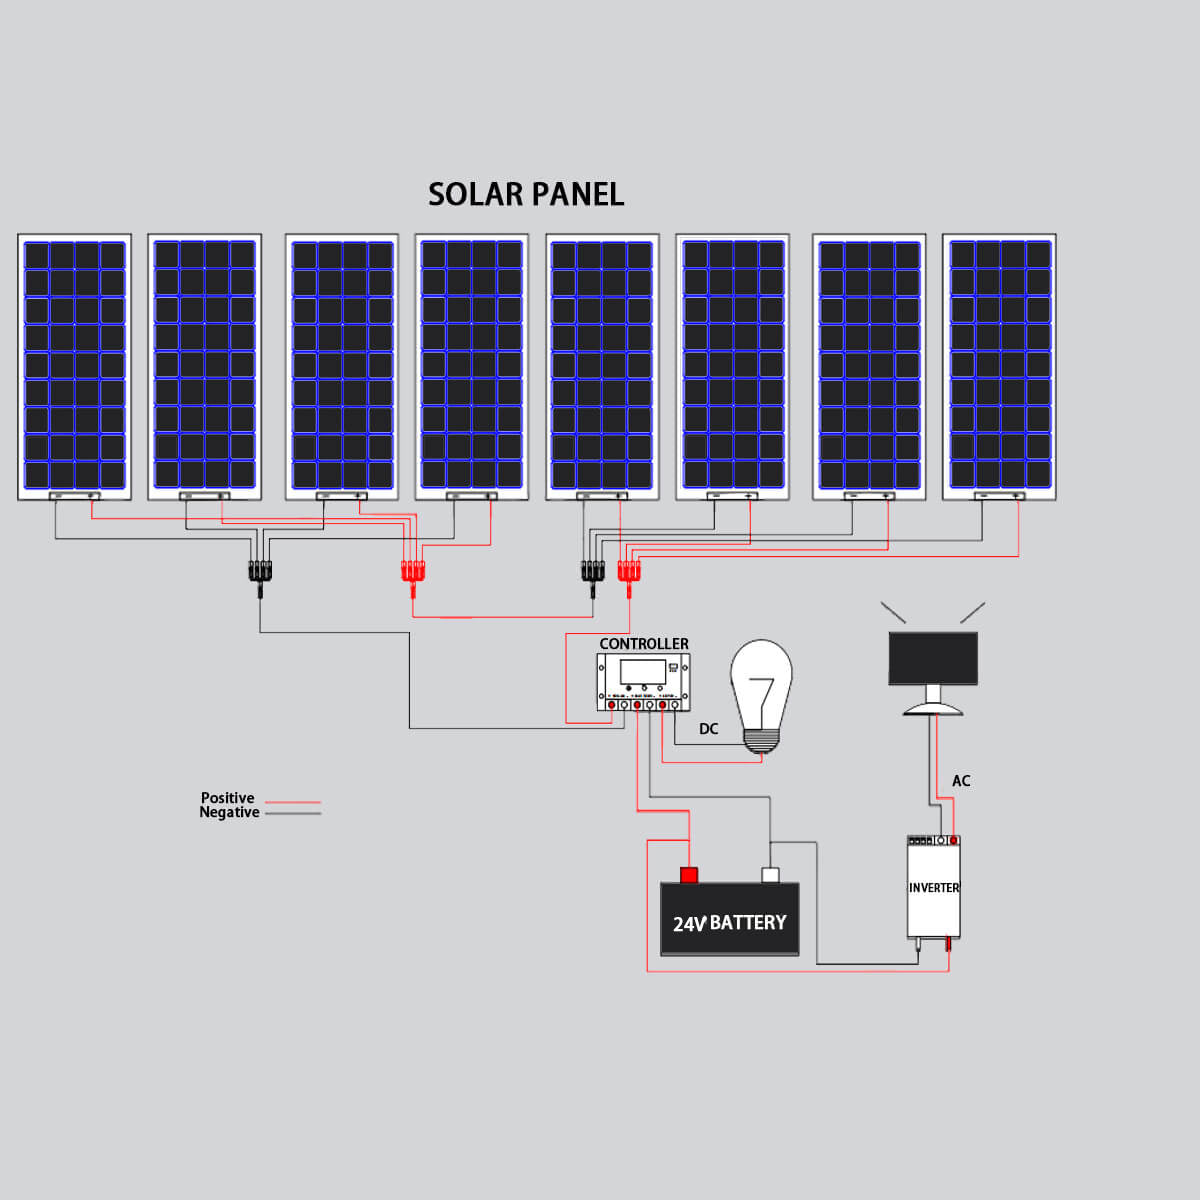 Kit de panneaux solaires Xinpuguang 800W 24V